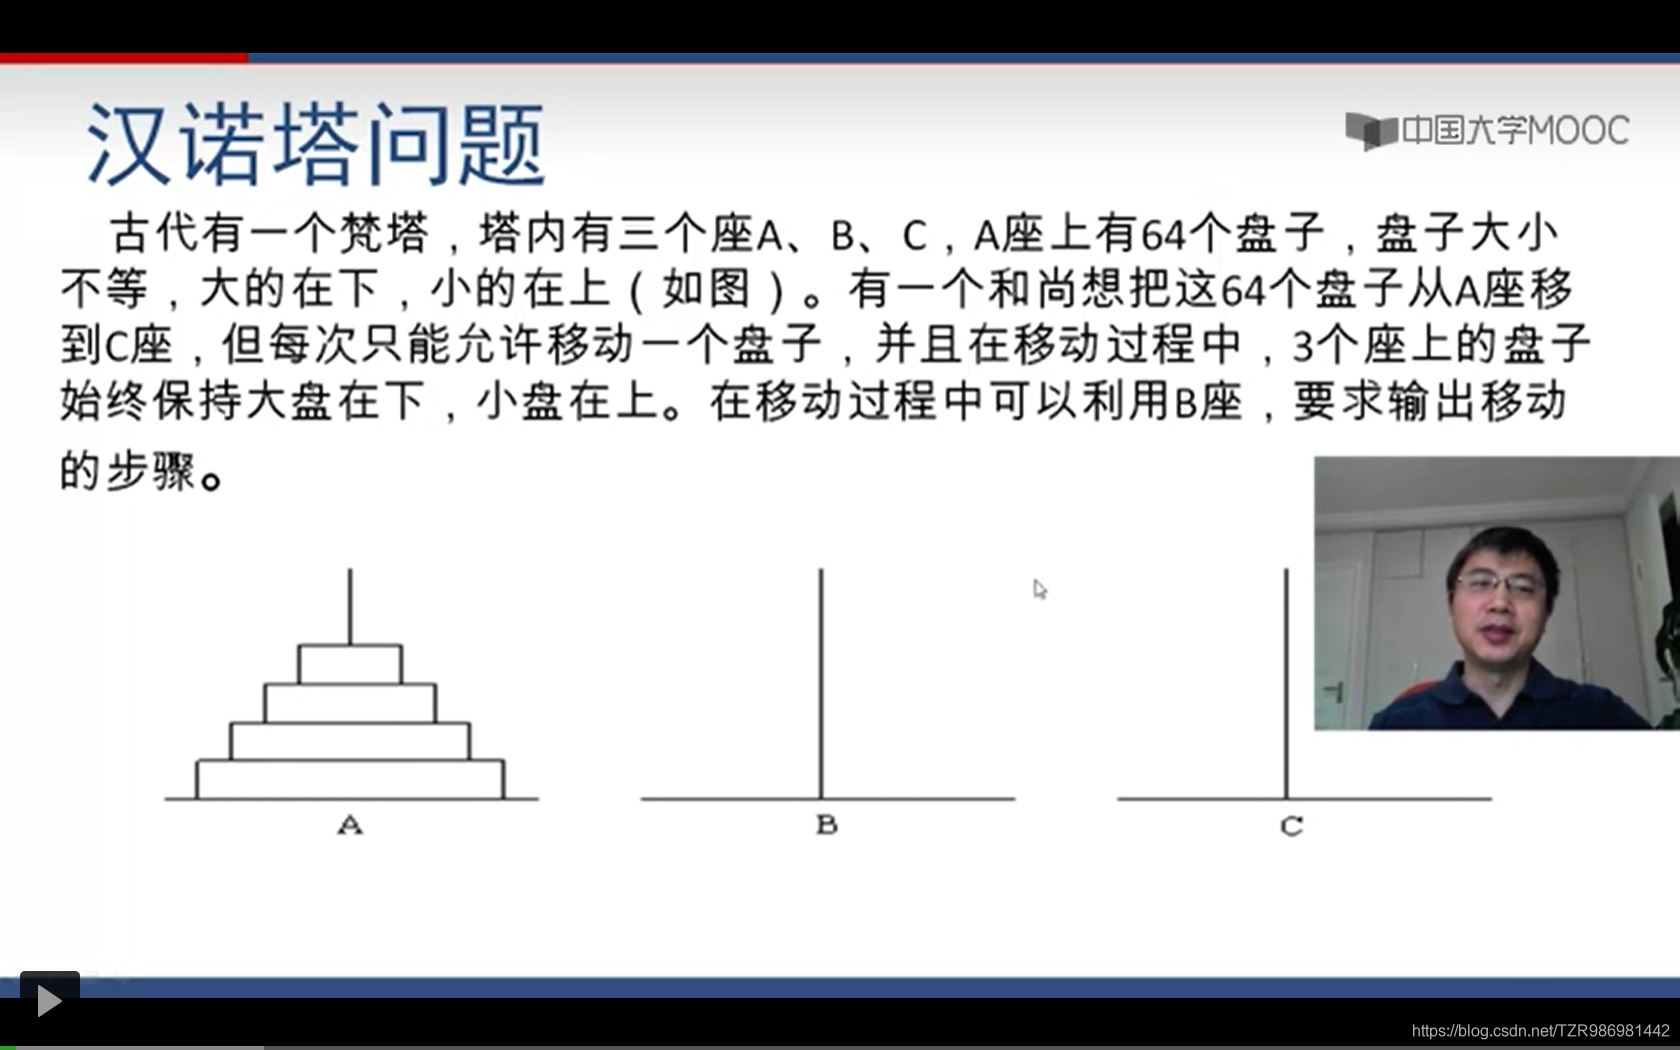 [笔记][中国大学mooc][程序设计与算法（二） 算法基础][递归] 汉诺塔